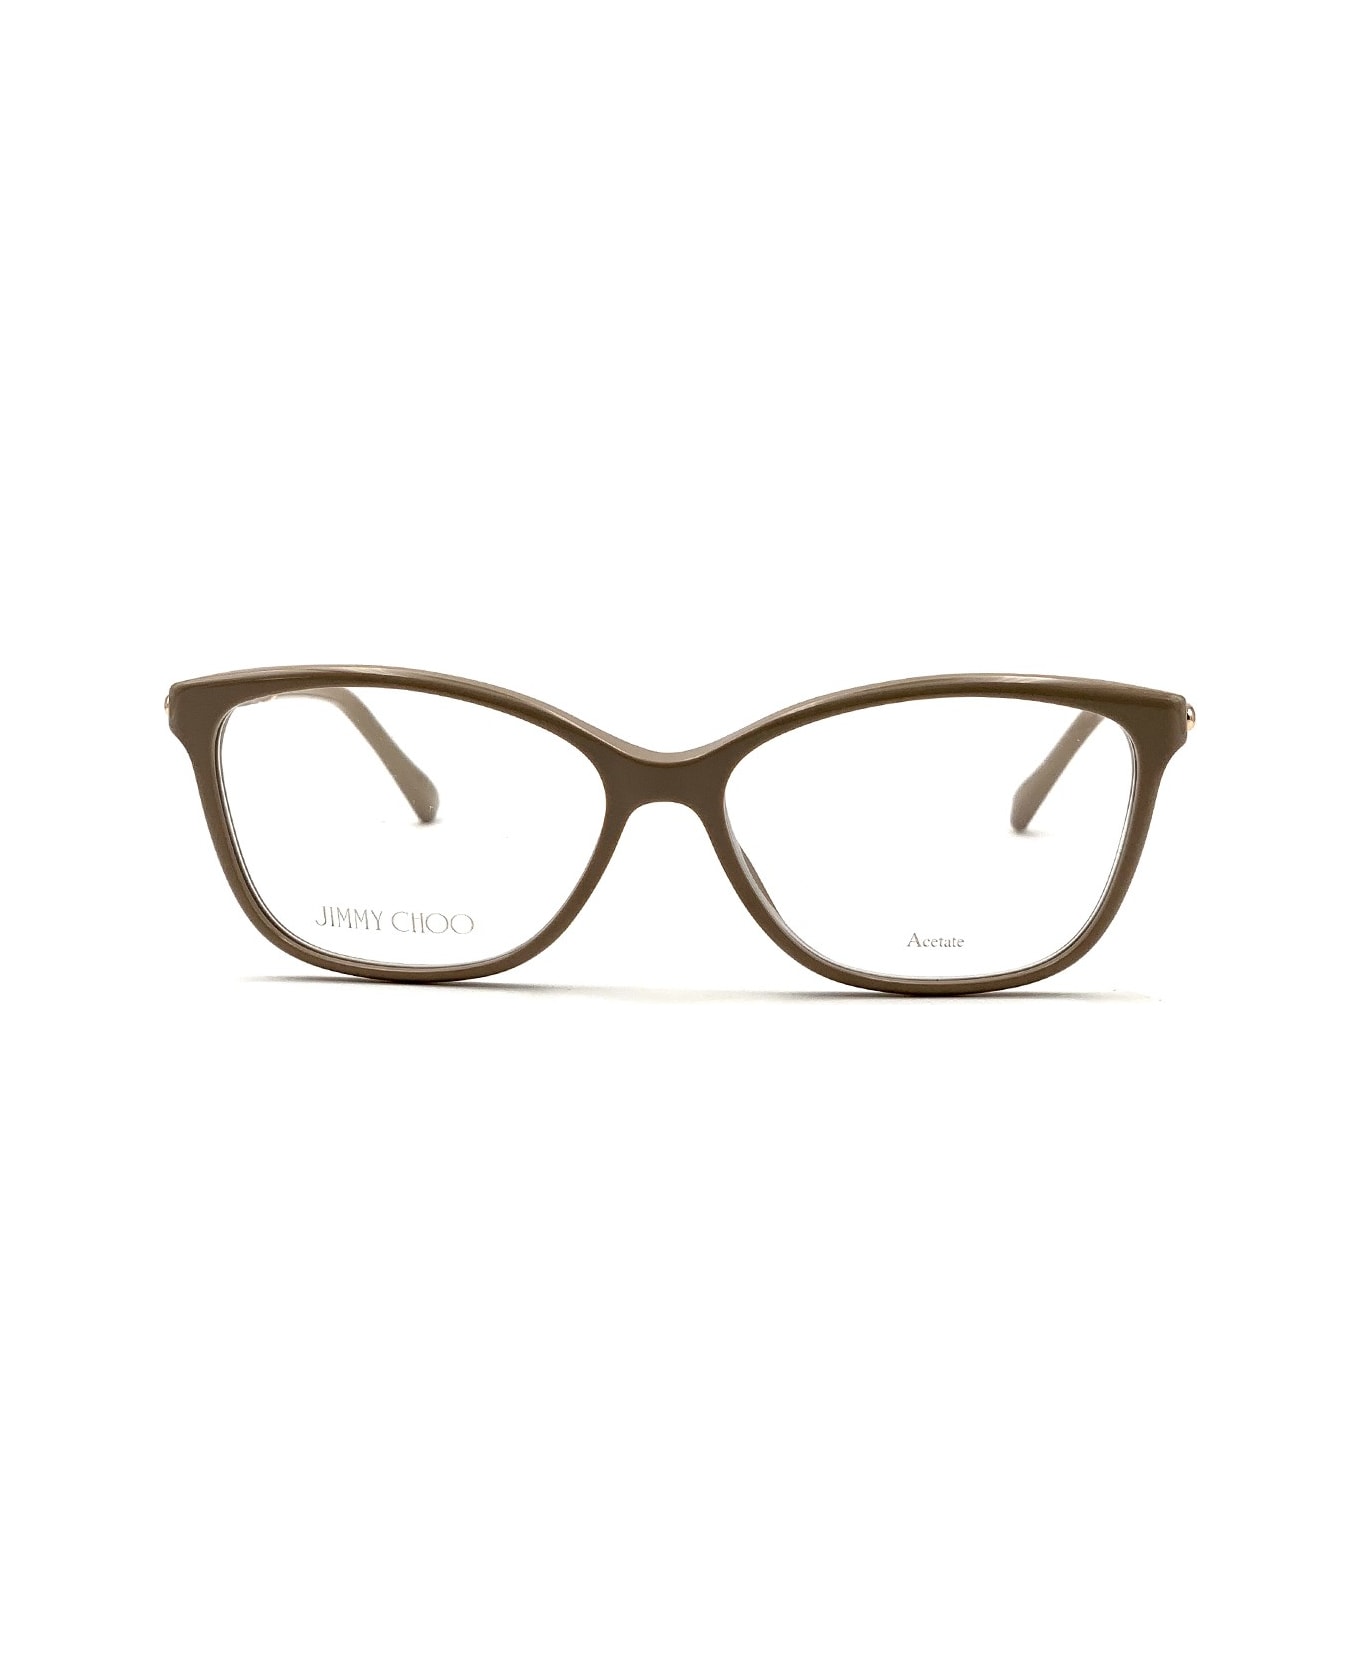 Jimmy Choo Eyewear Jc320 Glasses - Beige